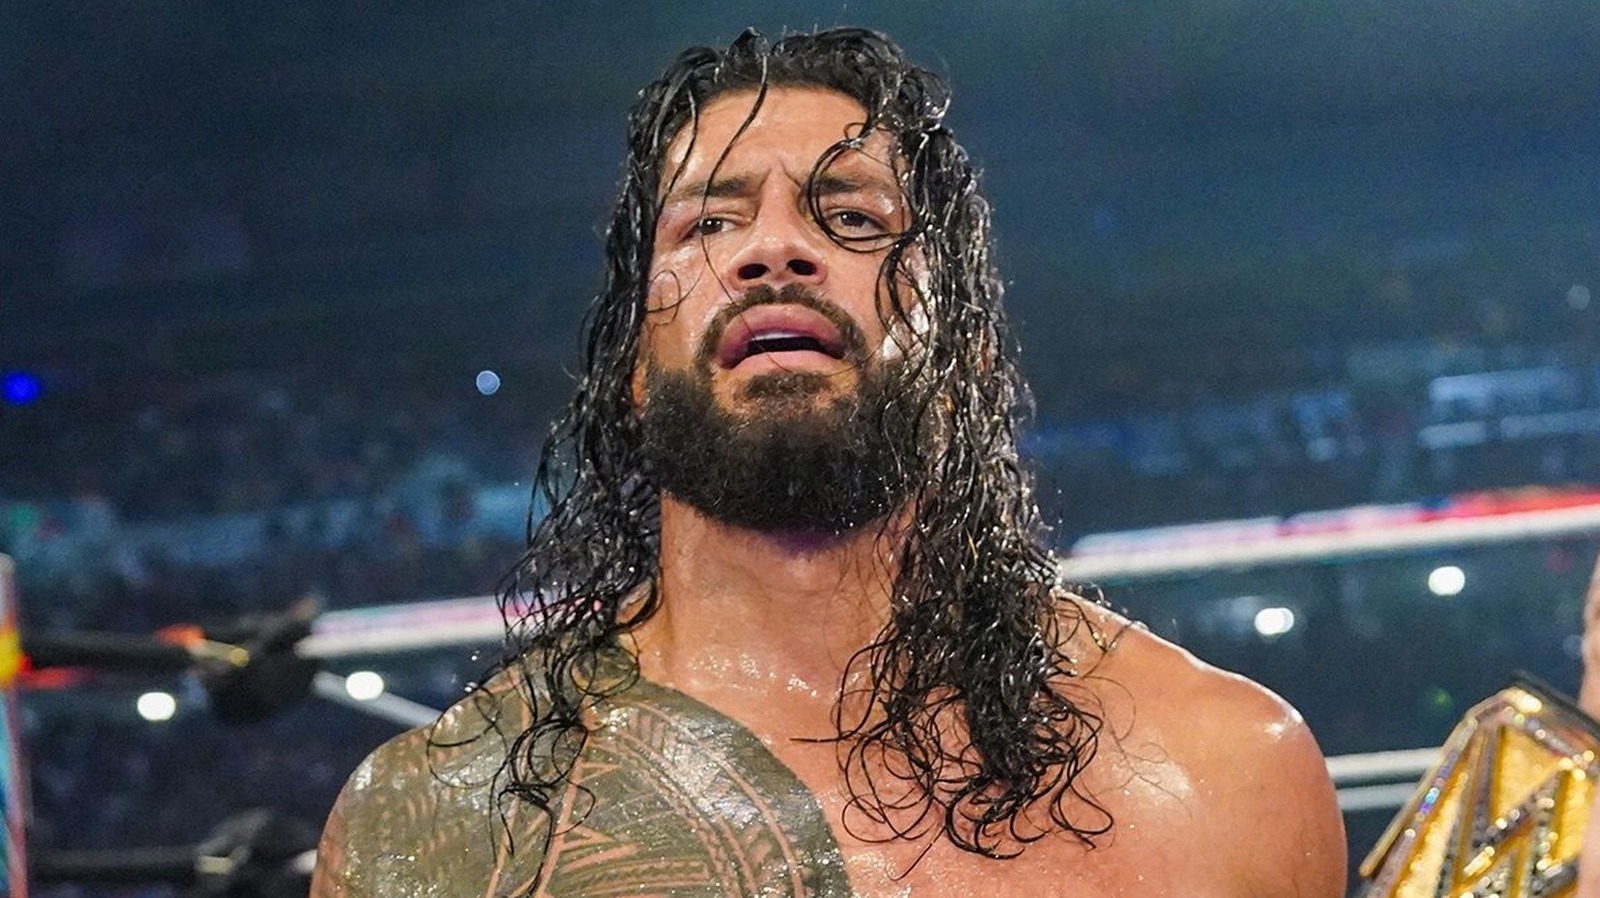 Detalles sobre la lesión reportada de Roman Reigns en WWE SummerSlam 2023